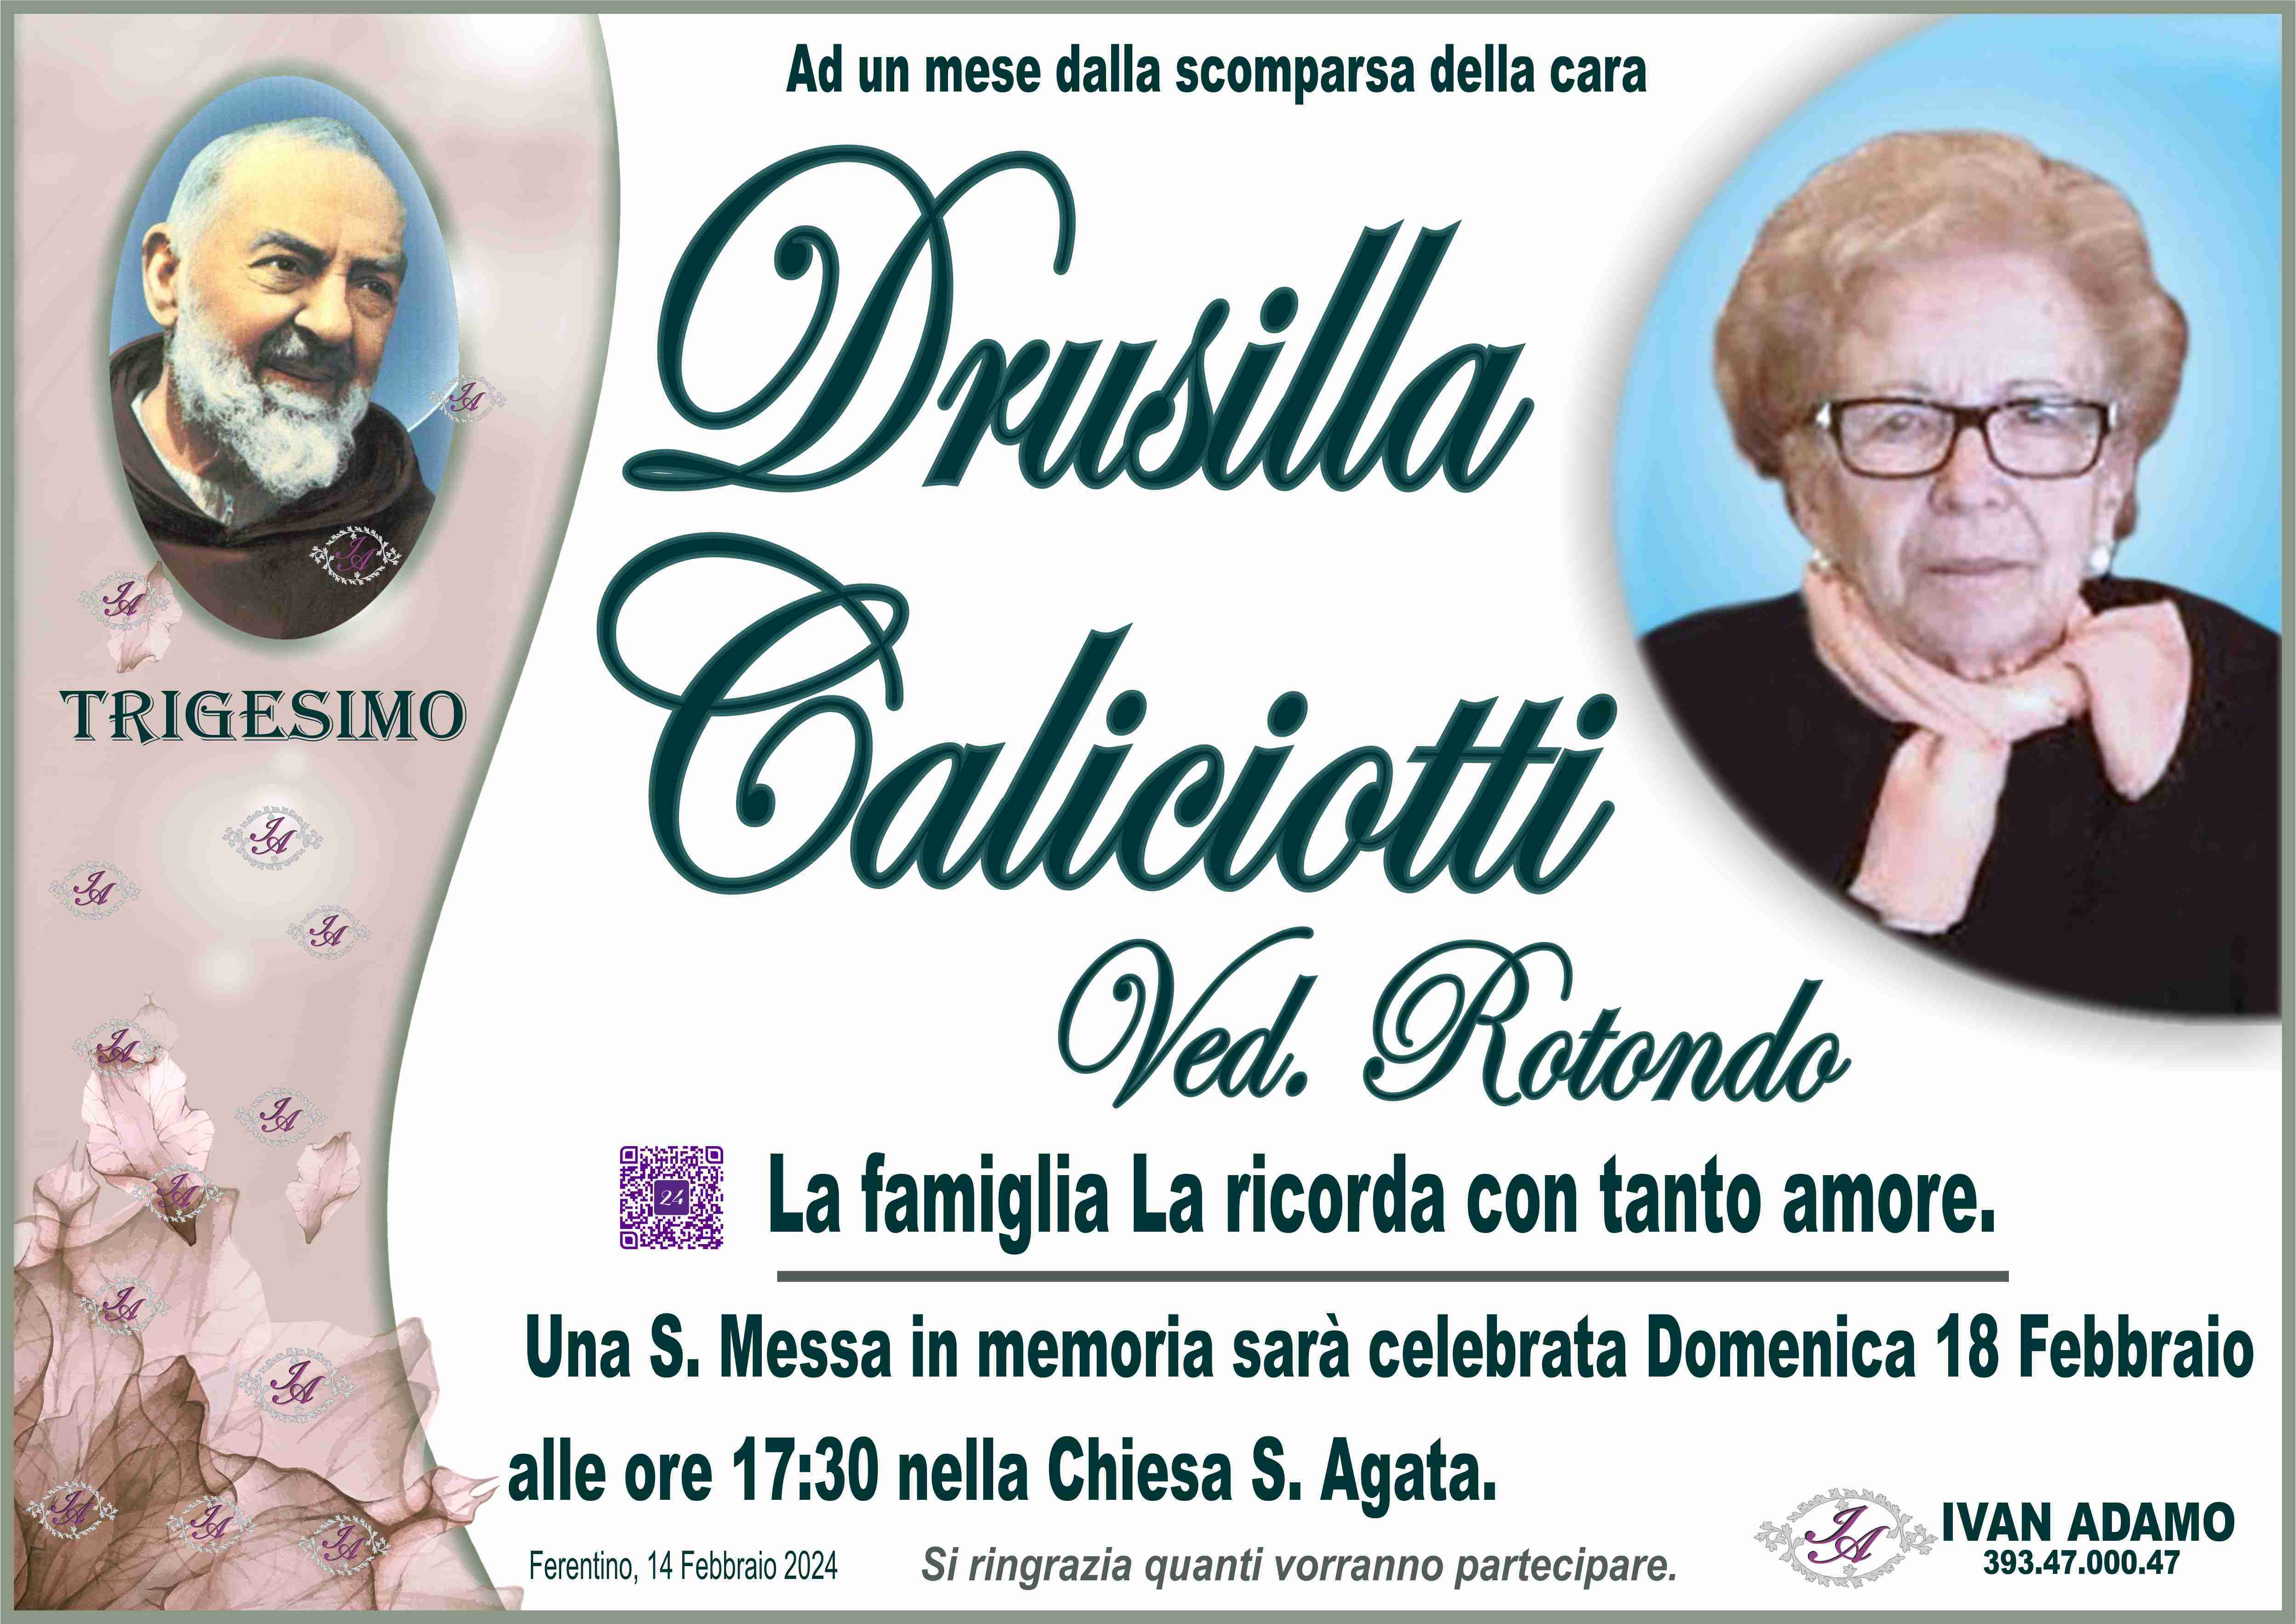 Drusilla Caliciotti